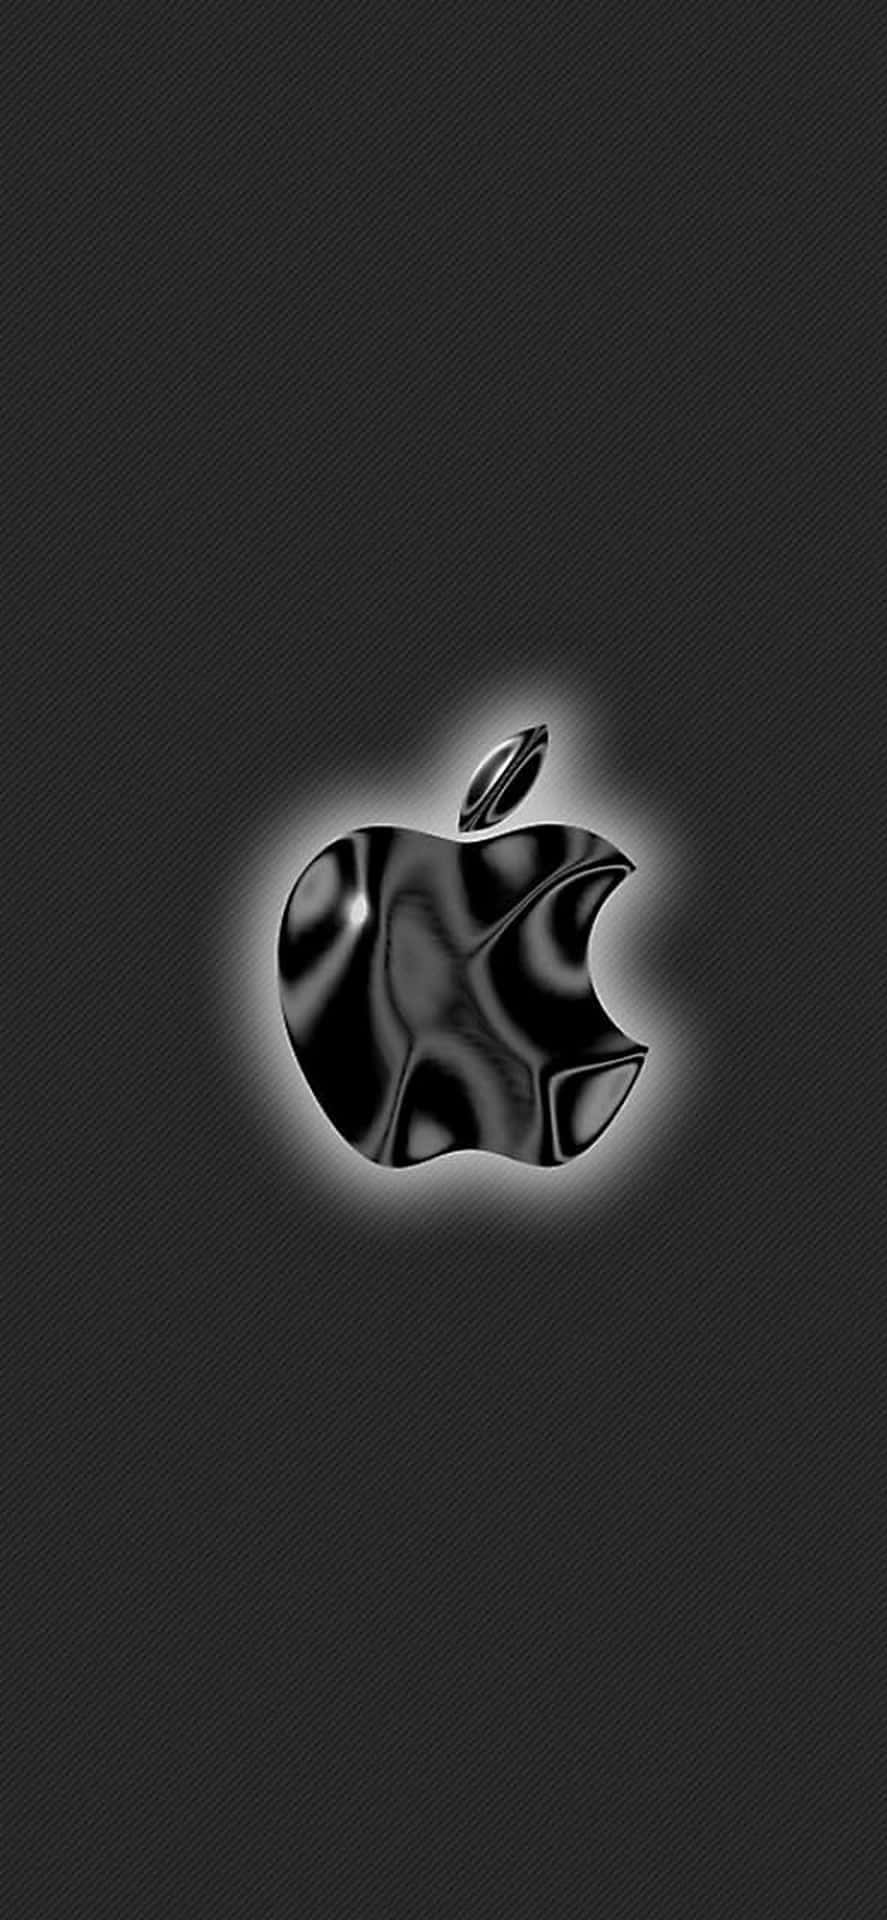 Blankasvarta Logo Häpnadsväckande Apple Hd Iphone Wallpaper